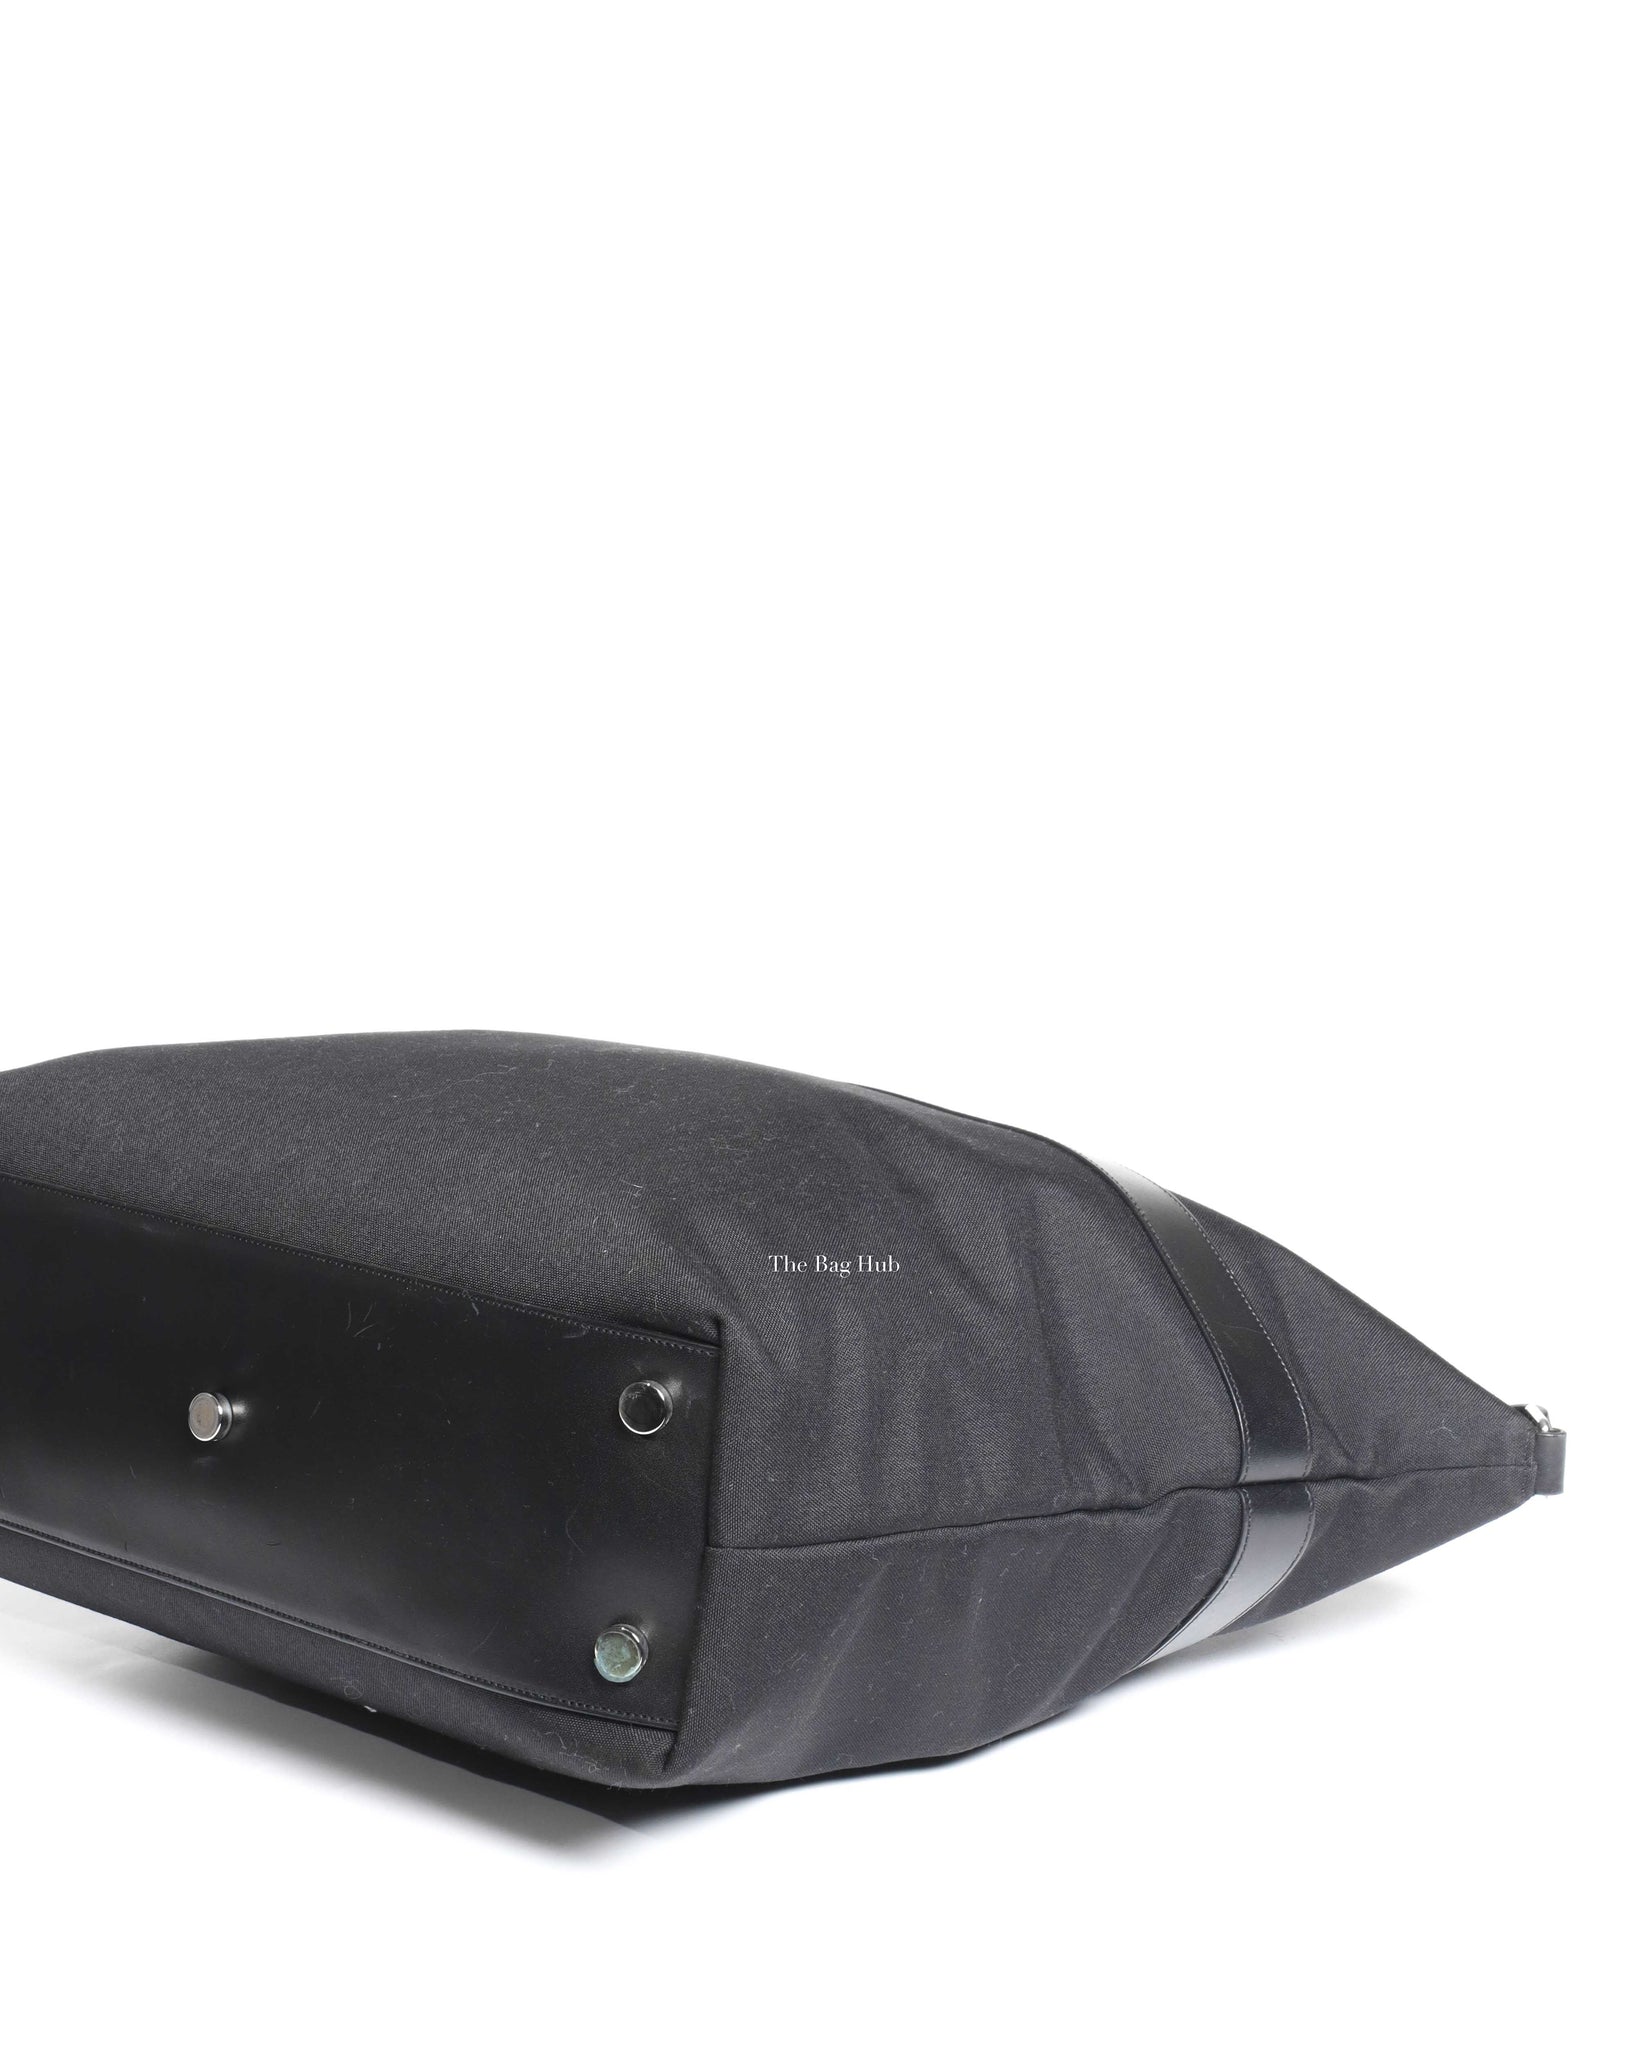 Saint Laurent Black Canvas & Leather Tote Bag-10